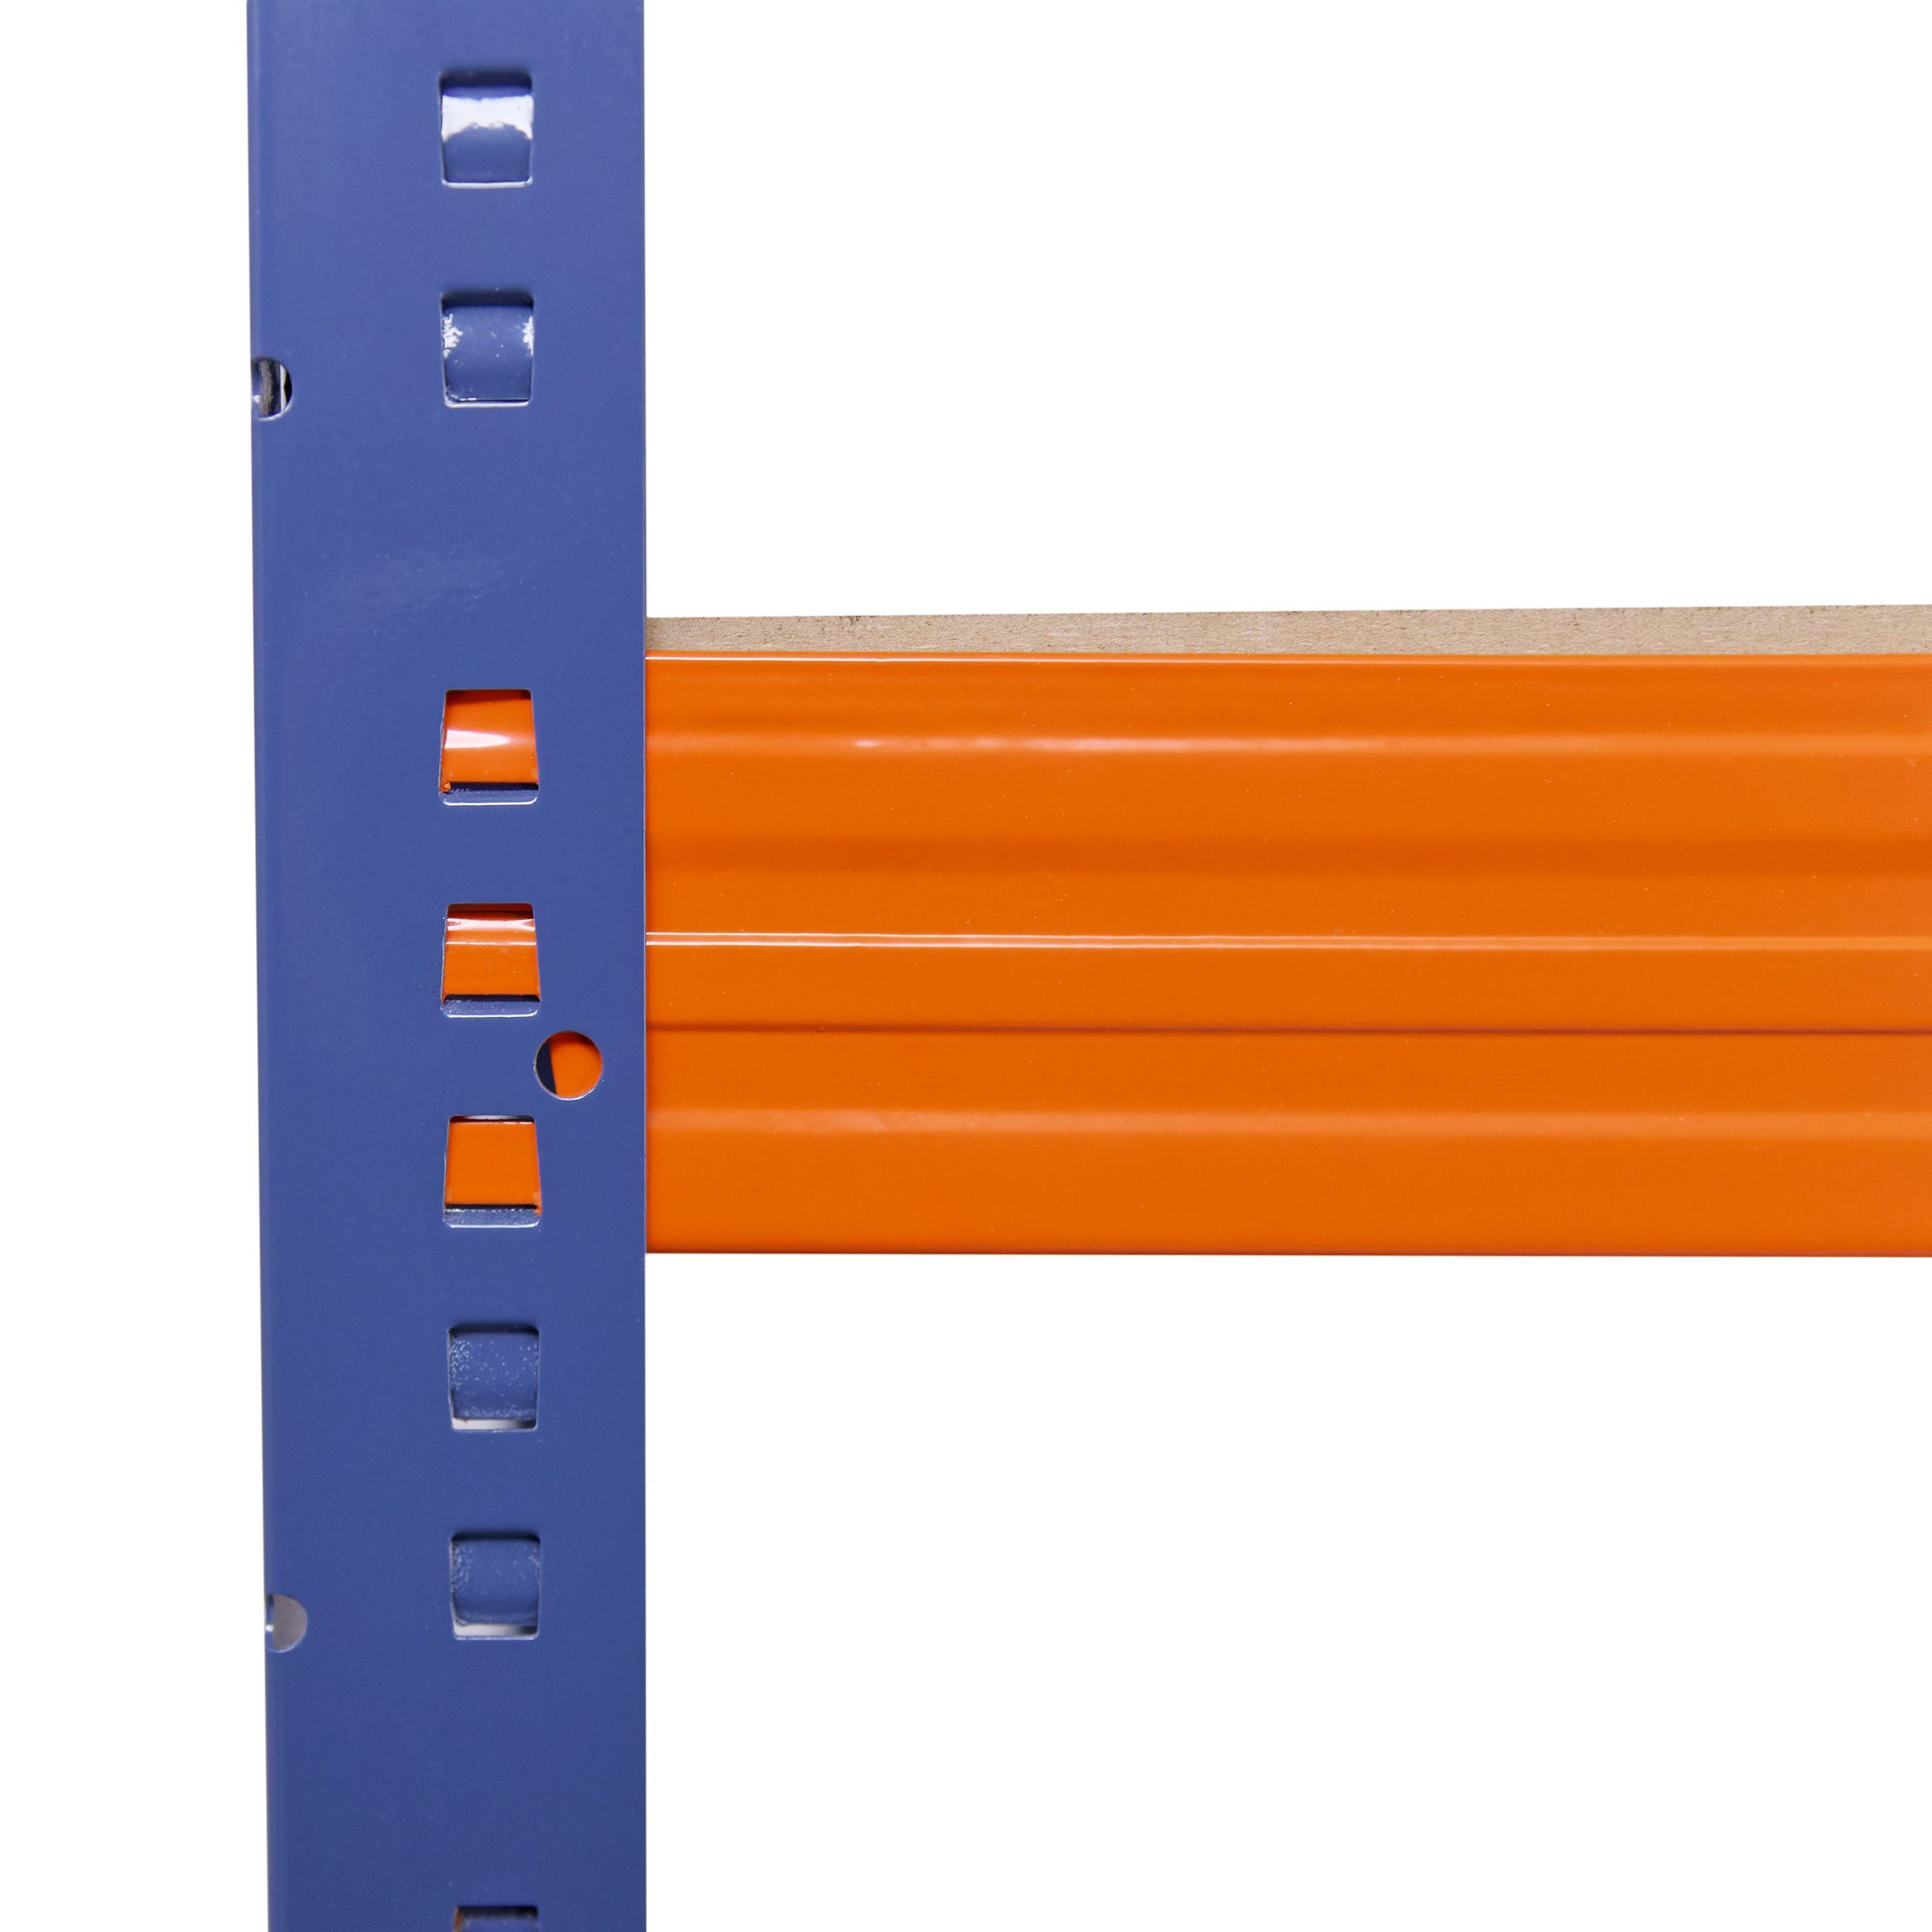 Regal Steckregal Schwerlastregal mit Tragkraft, Regale als blau-orange, Garagenregal, shelfplaza je 200x100x45cm Lagerregal, 5 Böden Metallregal Kellerregal, Metall 200kg & PROFI, Werkstattregal